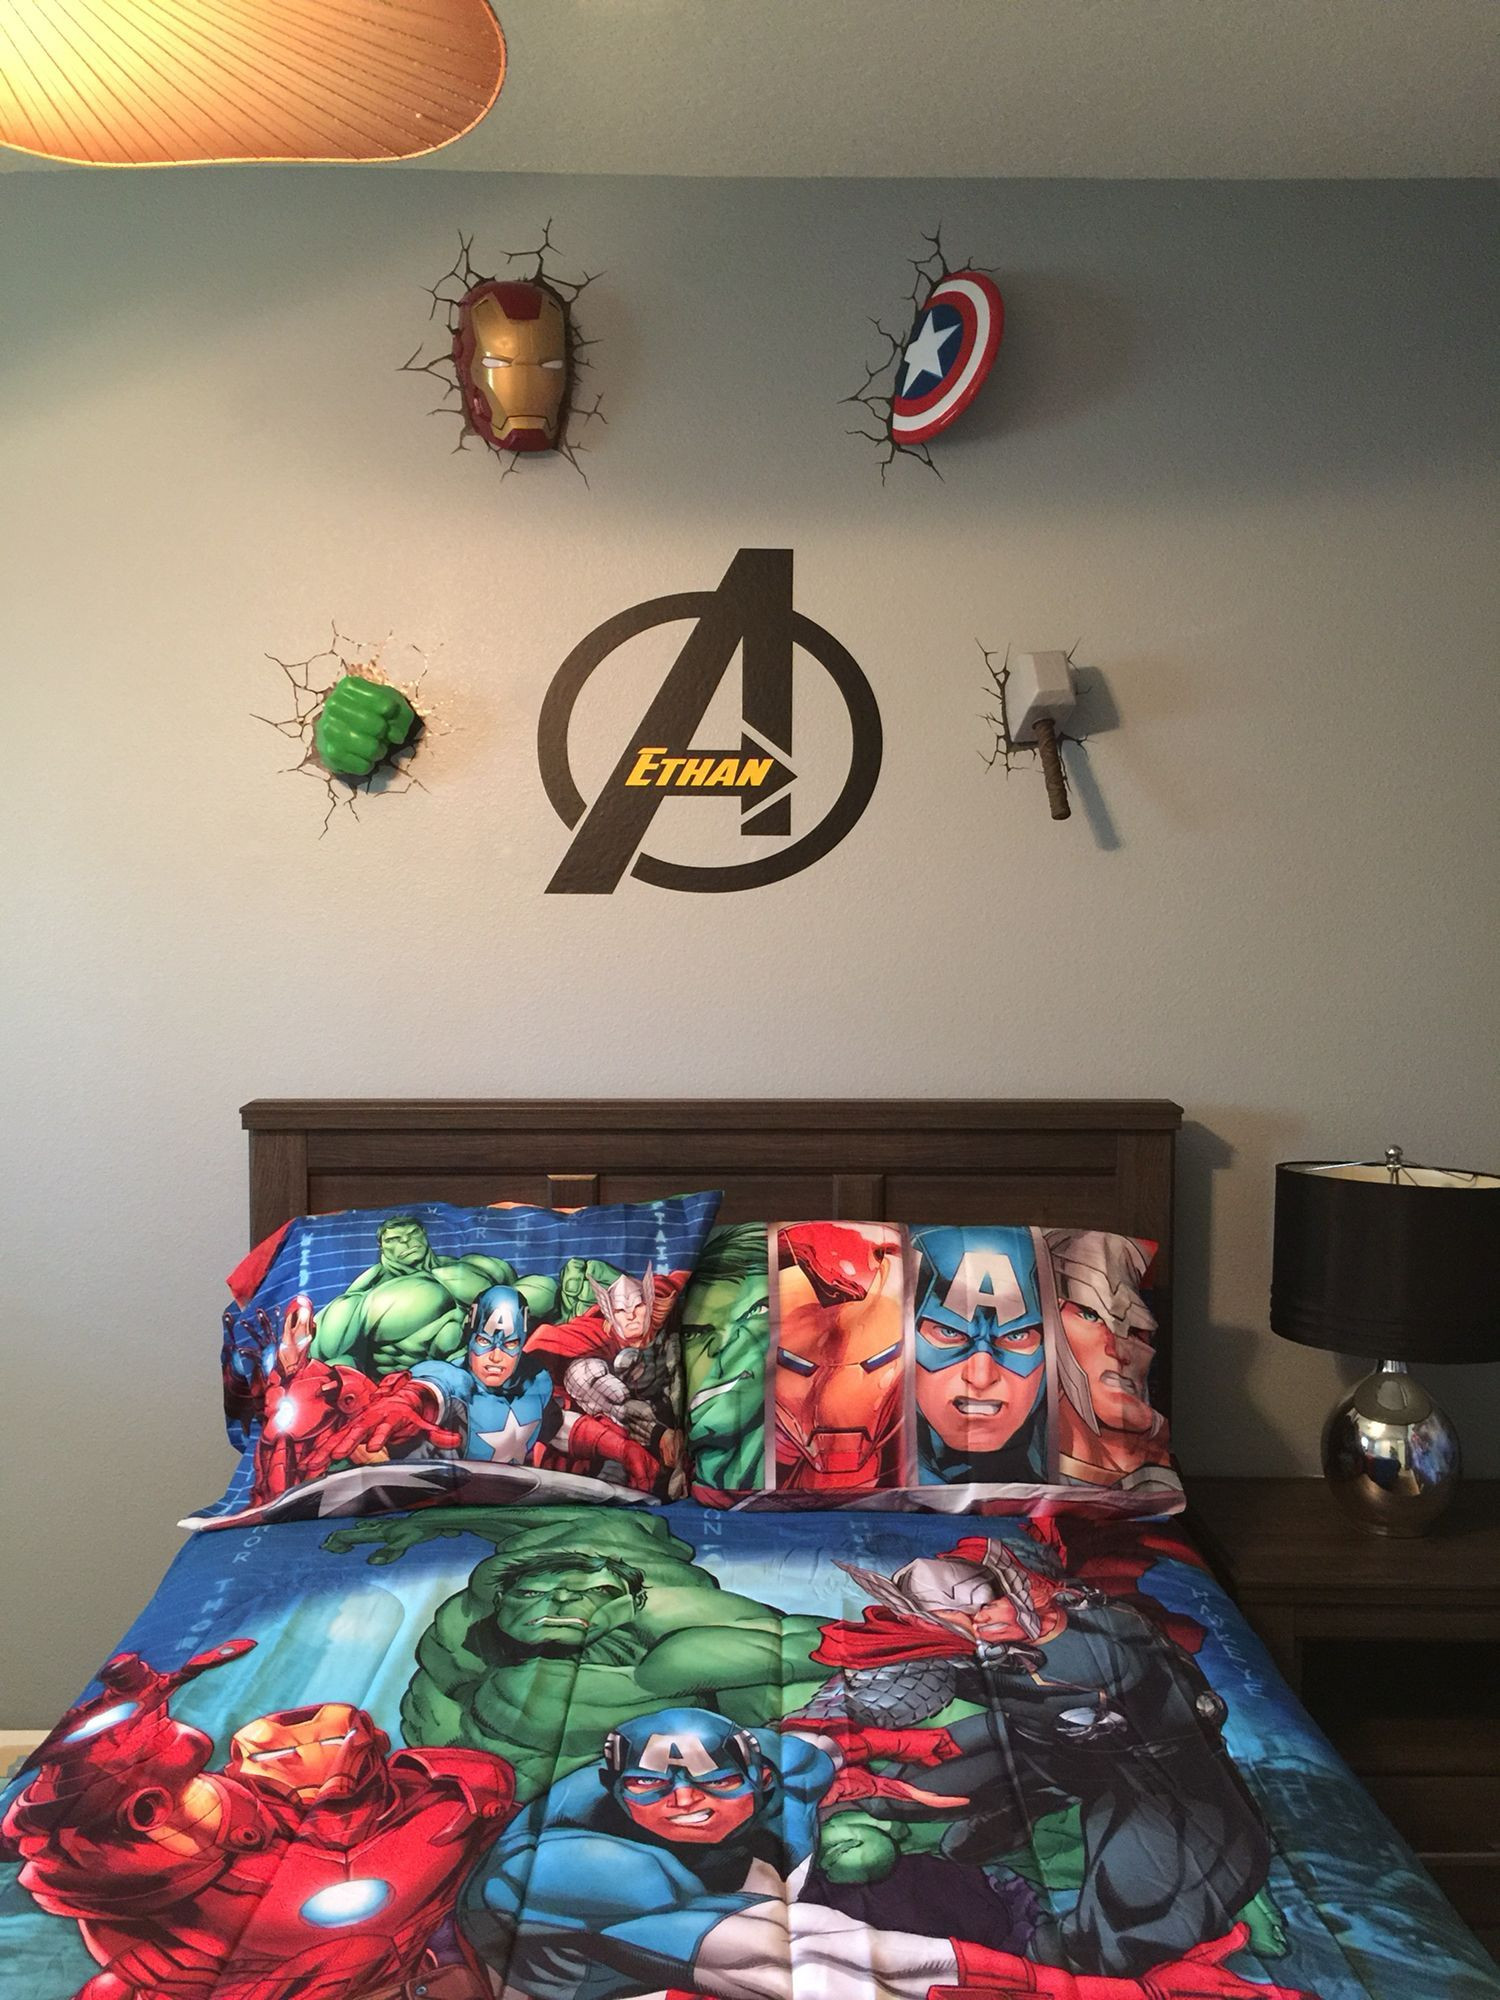 Avengers Bedroom Decor
 23 Ideas For Making Avengers Bedroom